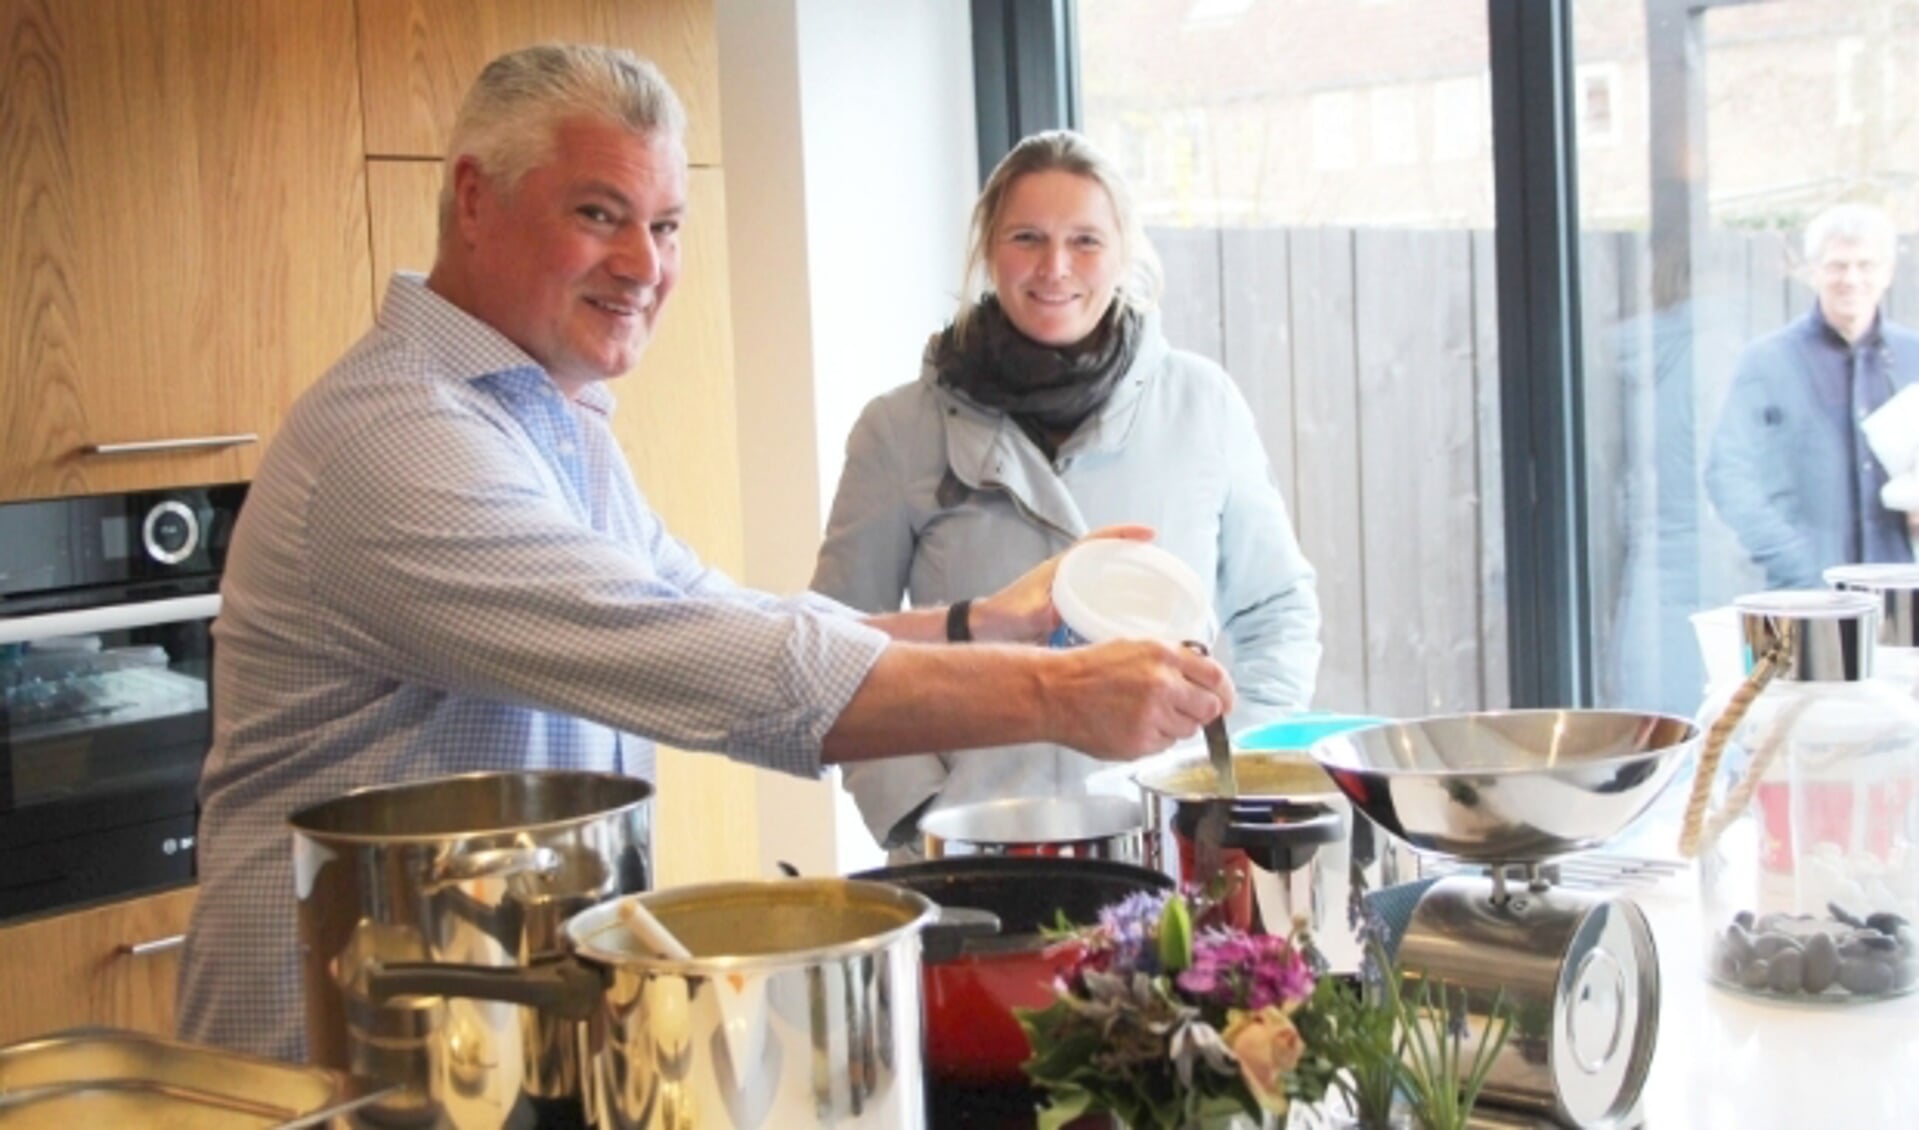 Marcel Voskens kookt elke dag met veel plezier voor dertig personen die een maaltijd juist nu goed kunnen gebruiken. (Foto: Lysette Verwegen)